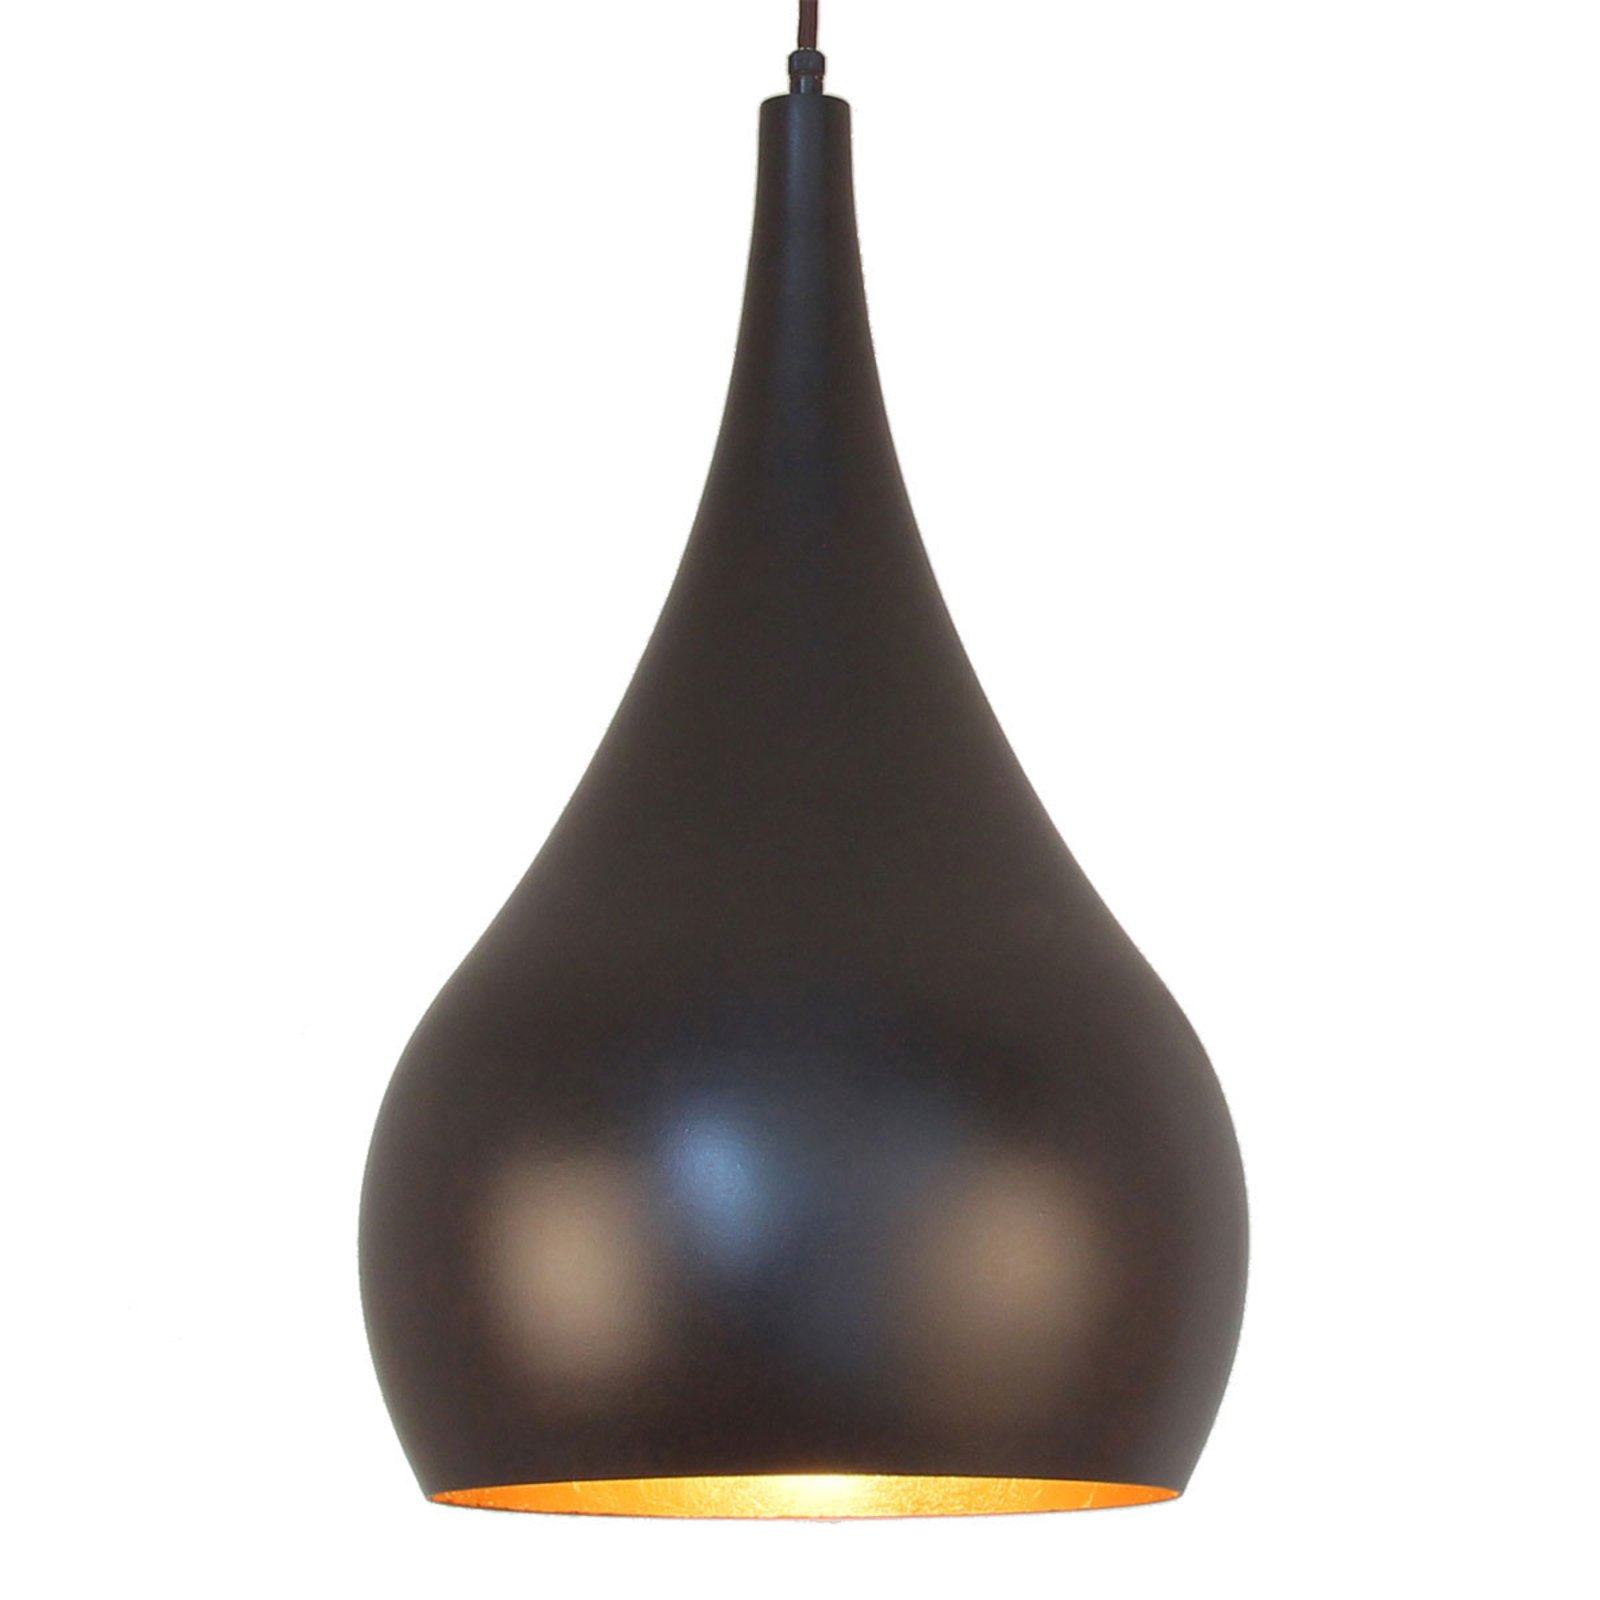 Menzel Solo hanglamp Ui bruin-zwart 30cm